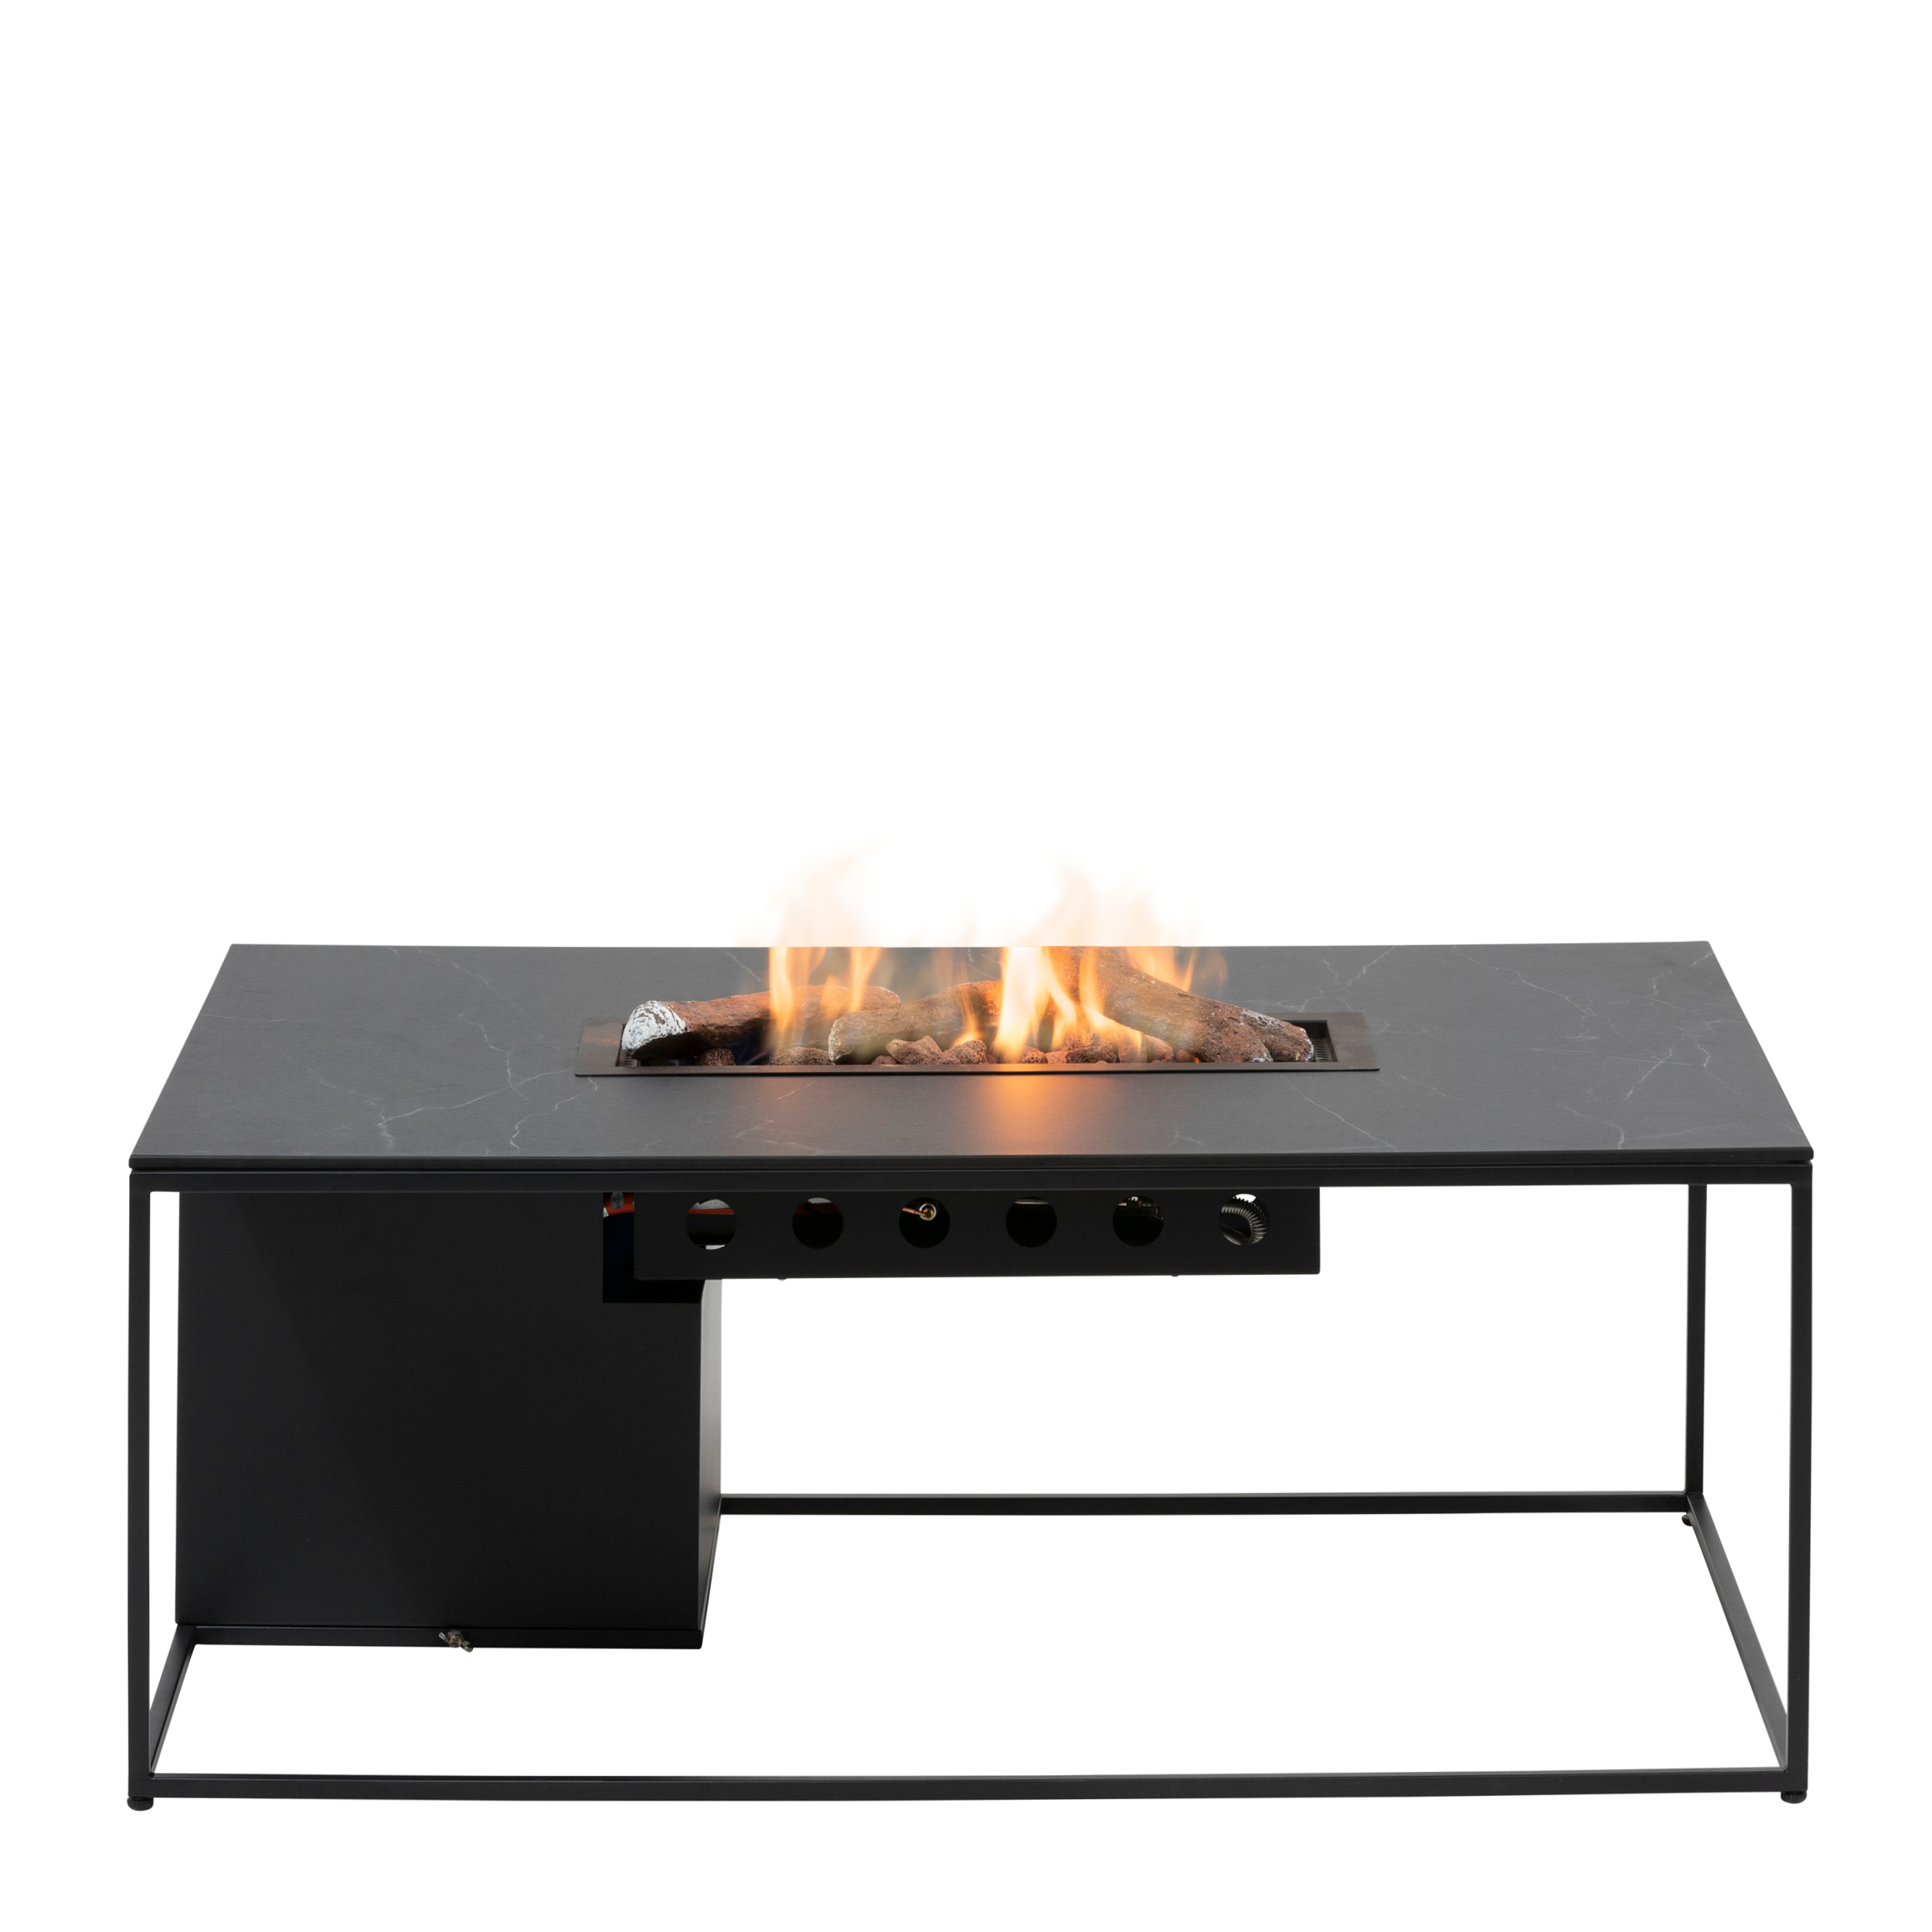 Levně Stůl s plynovým ohništěm COSI- typ Cosi design line černý rám / keramická deska